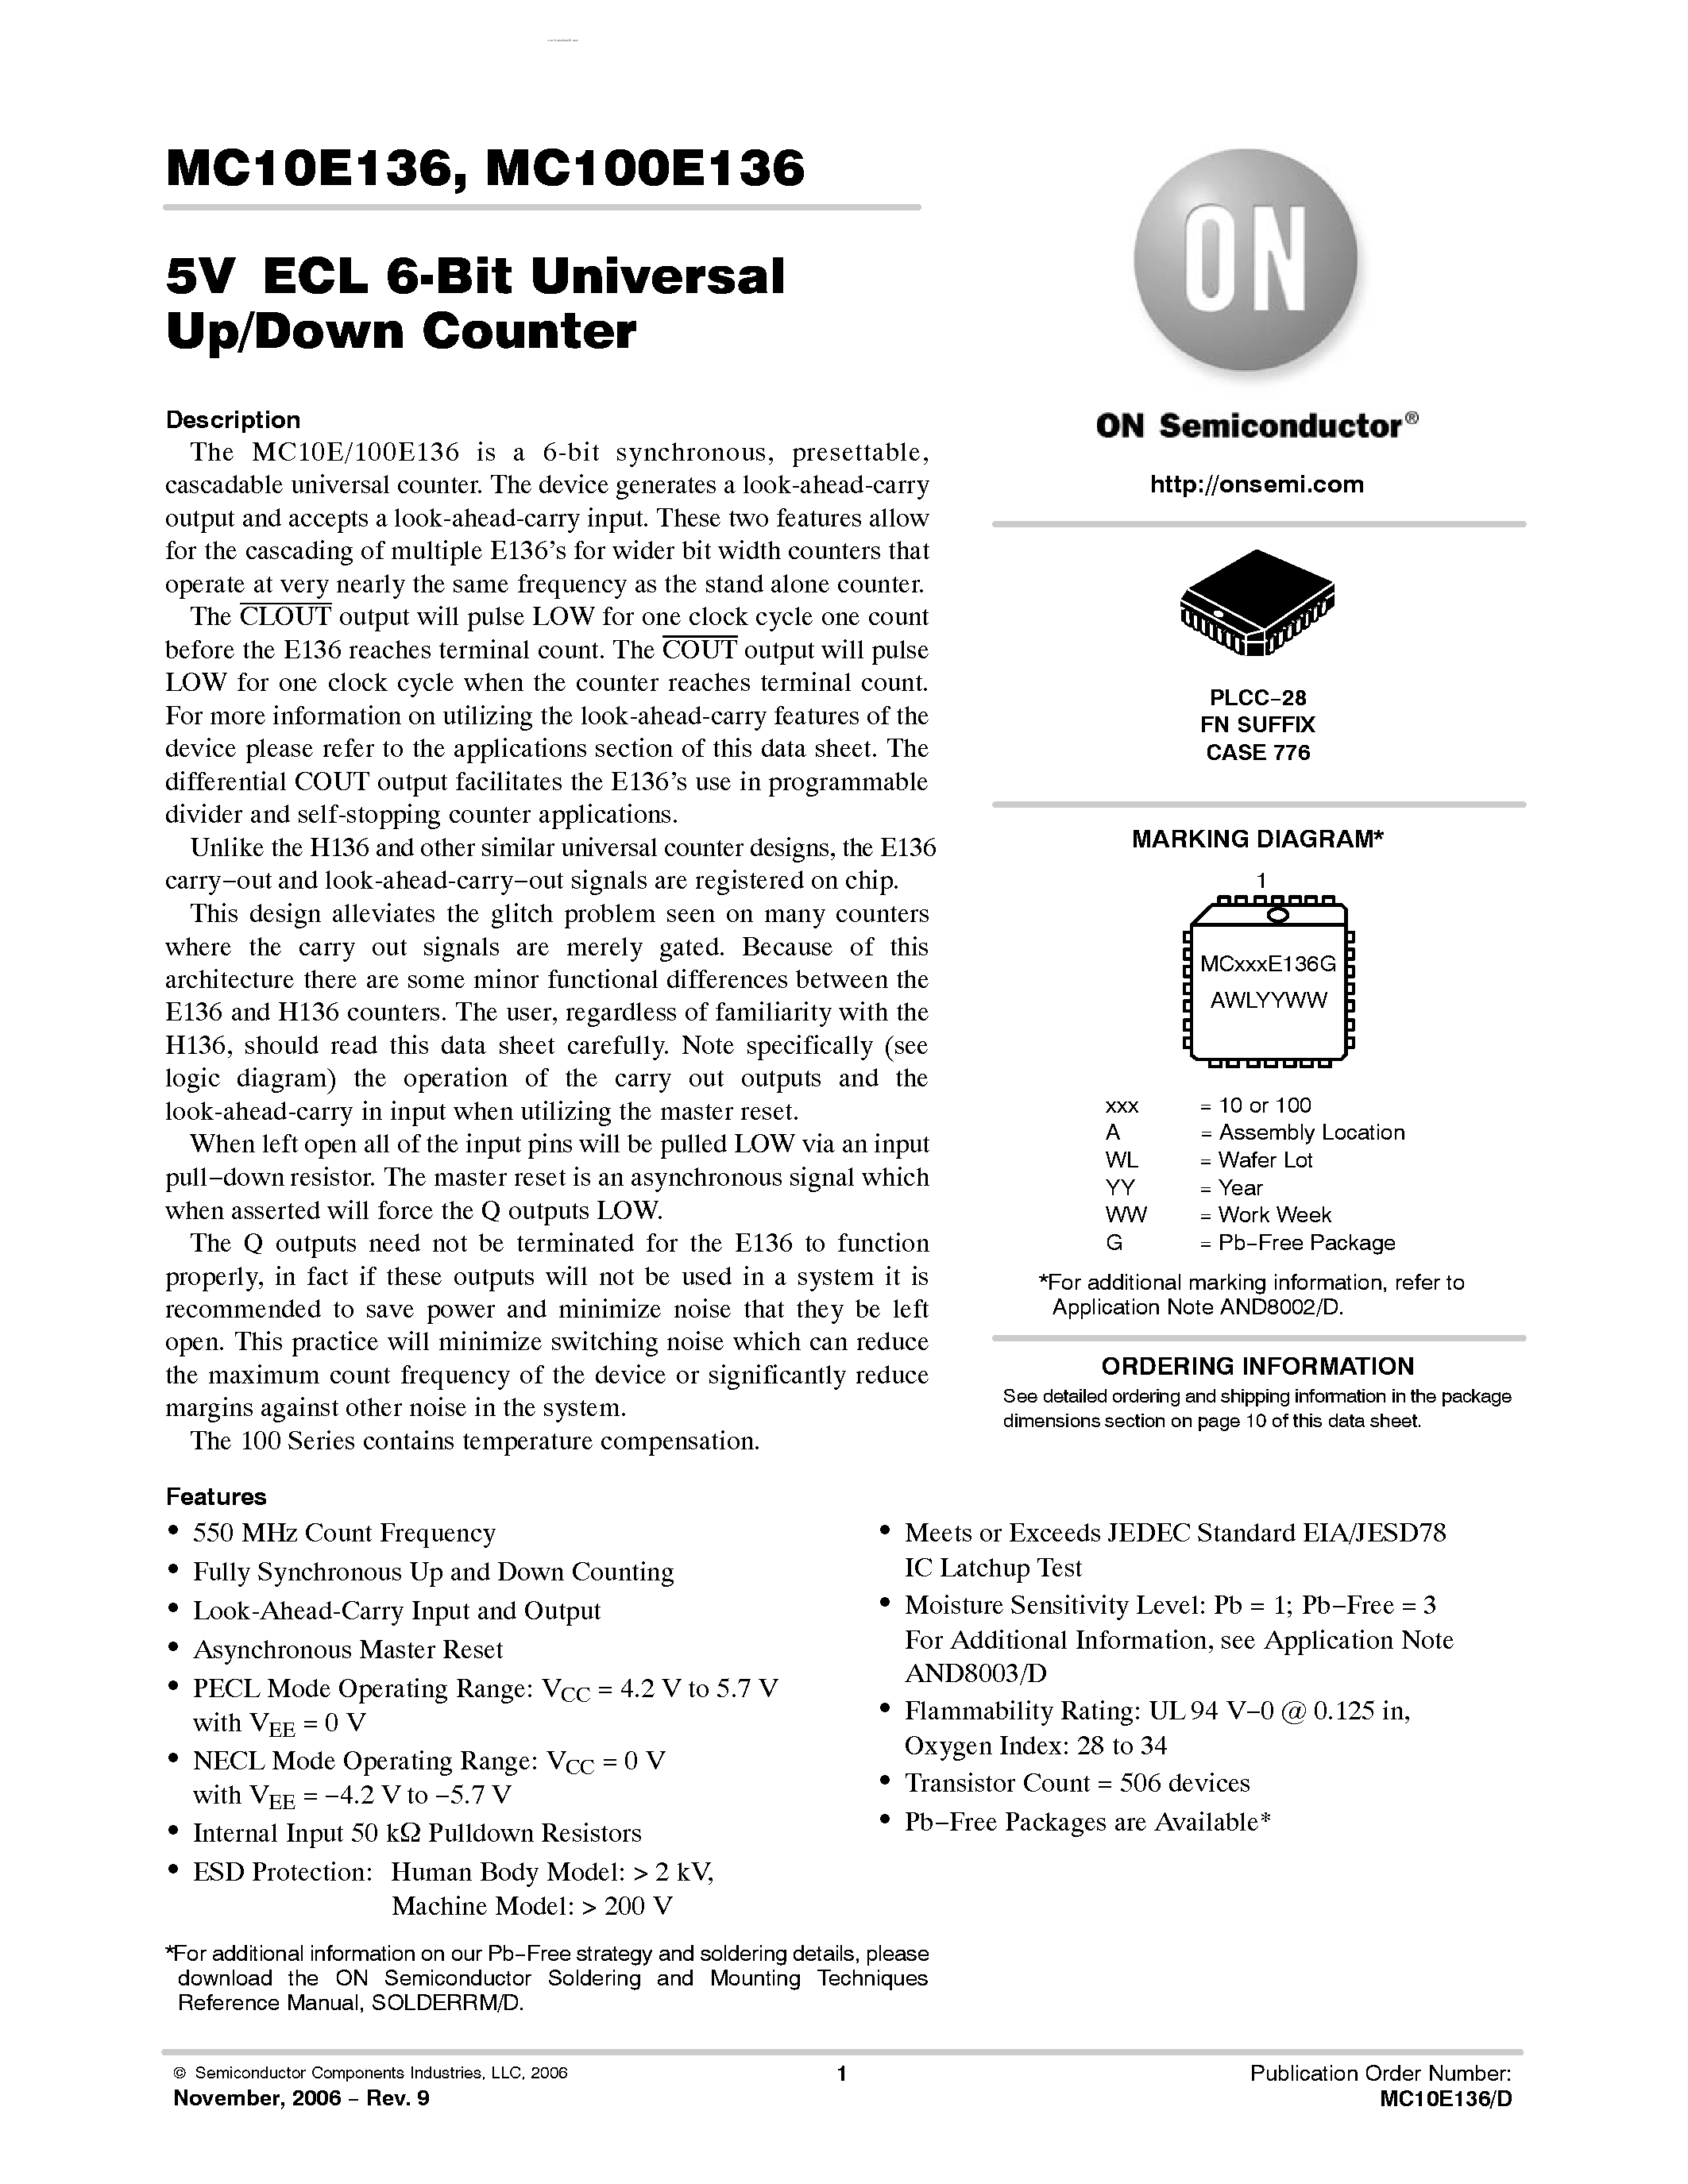 Datasheet MC100E136 - 6-BIT UNIVERSAL UP/DOWN COUNTER page 1